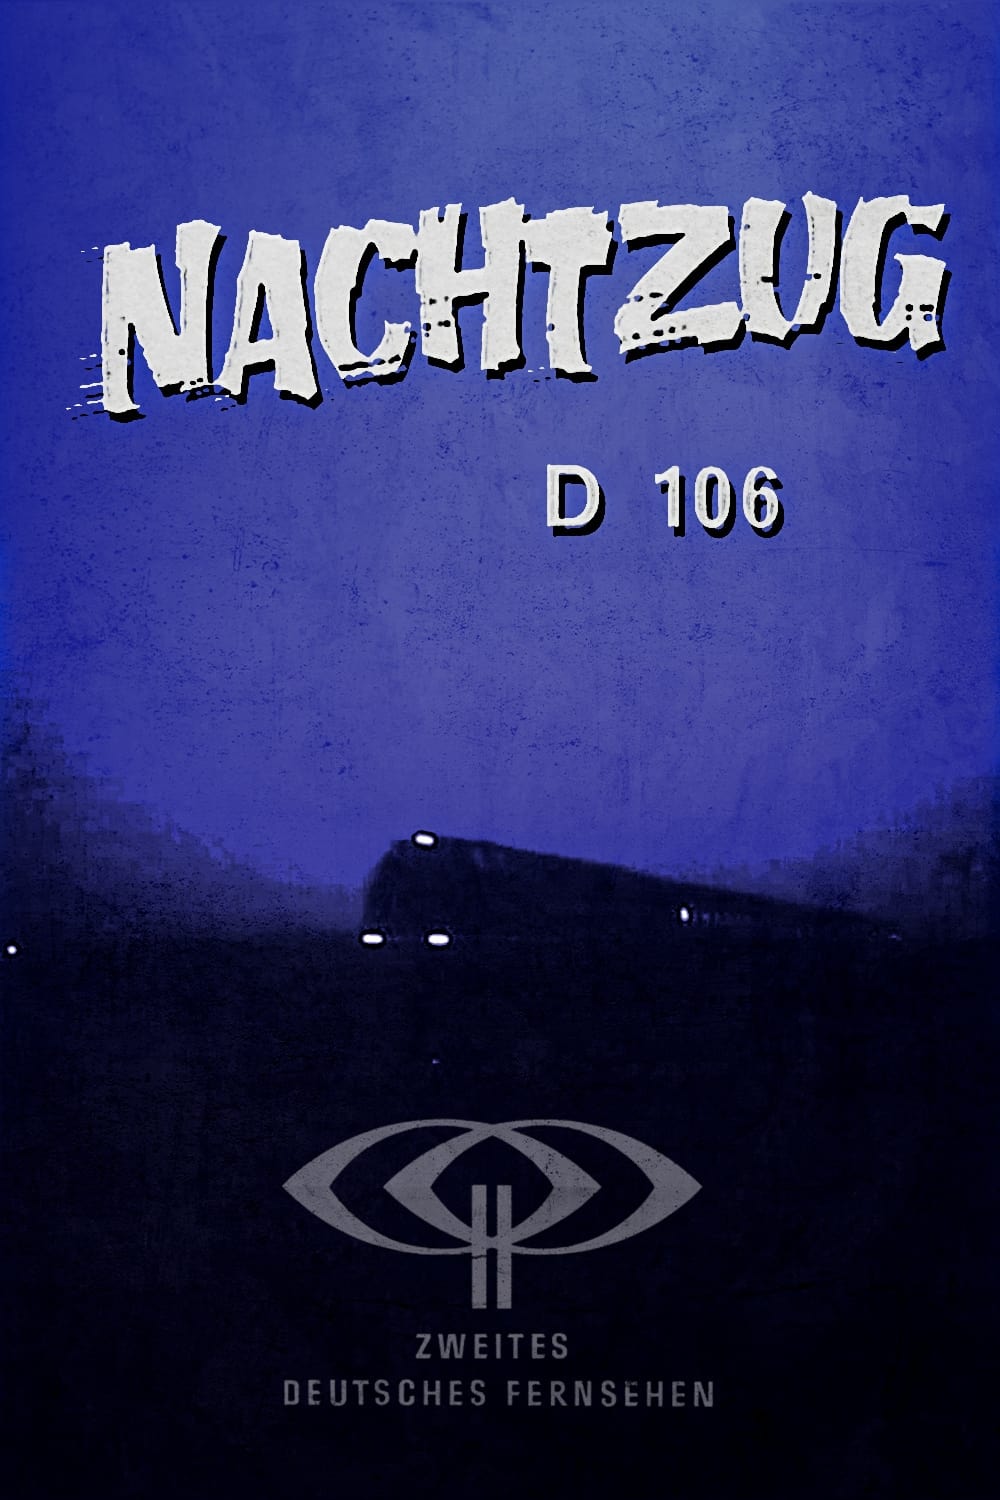 Night train D 106 (1964)